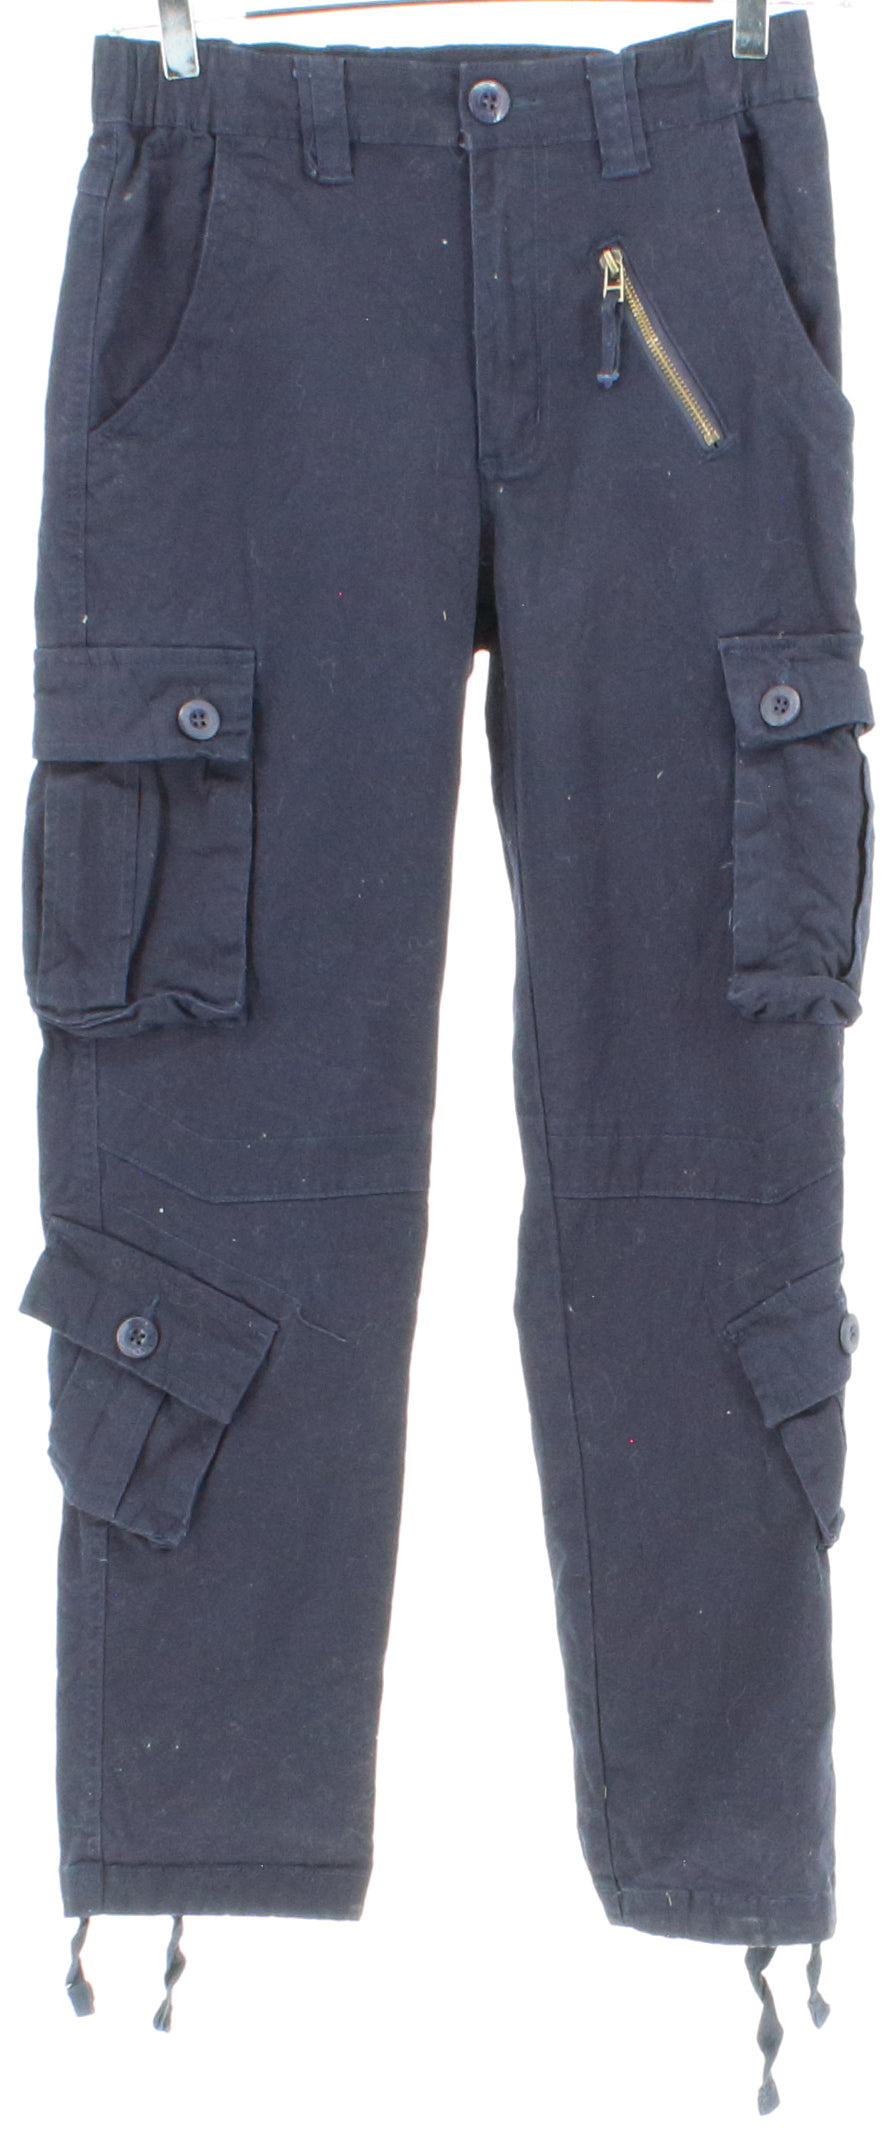 Mustway Navy Blue Women's Cargo Pants